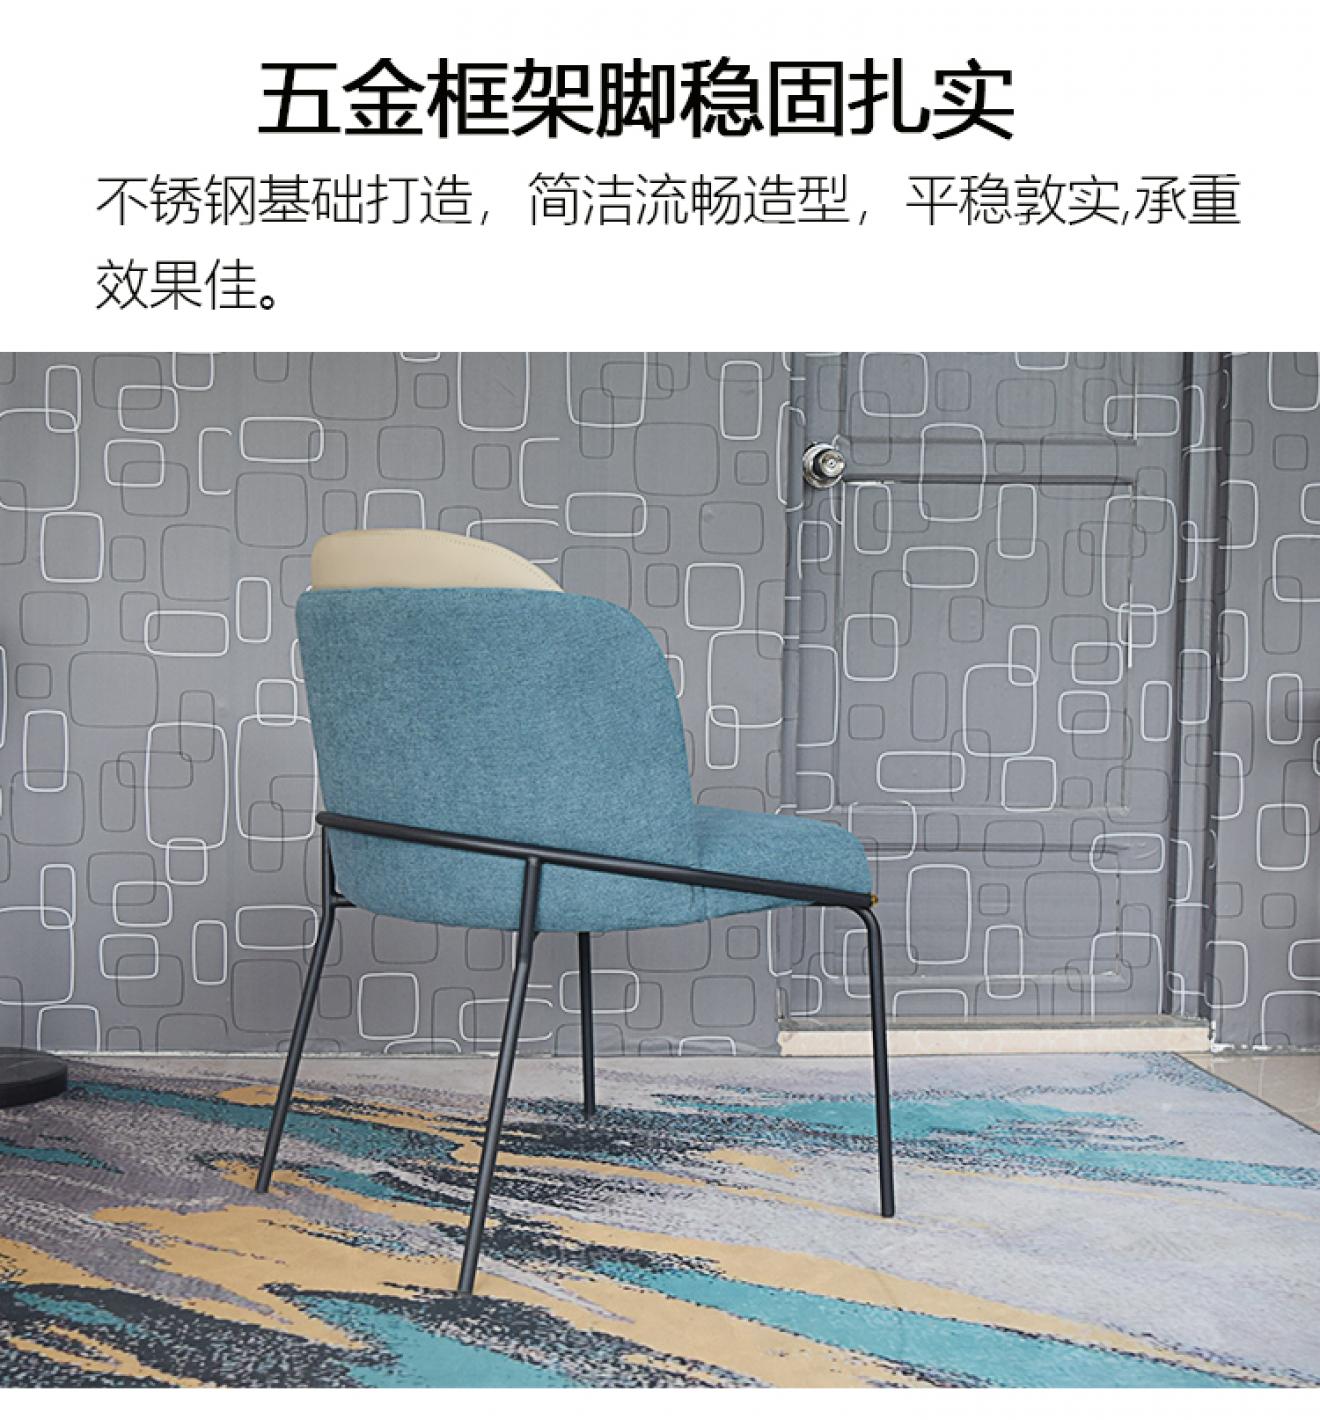 蓝色餐椅-详情页_07.jpg